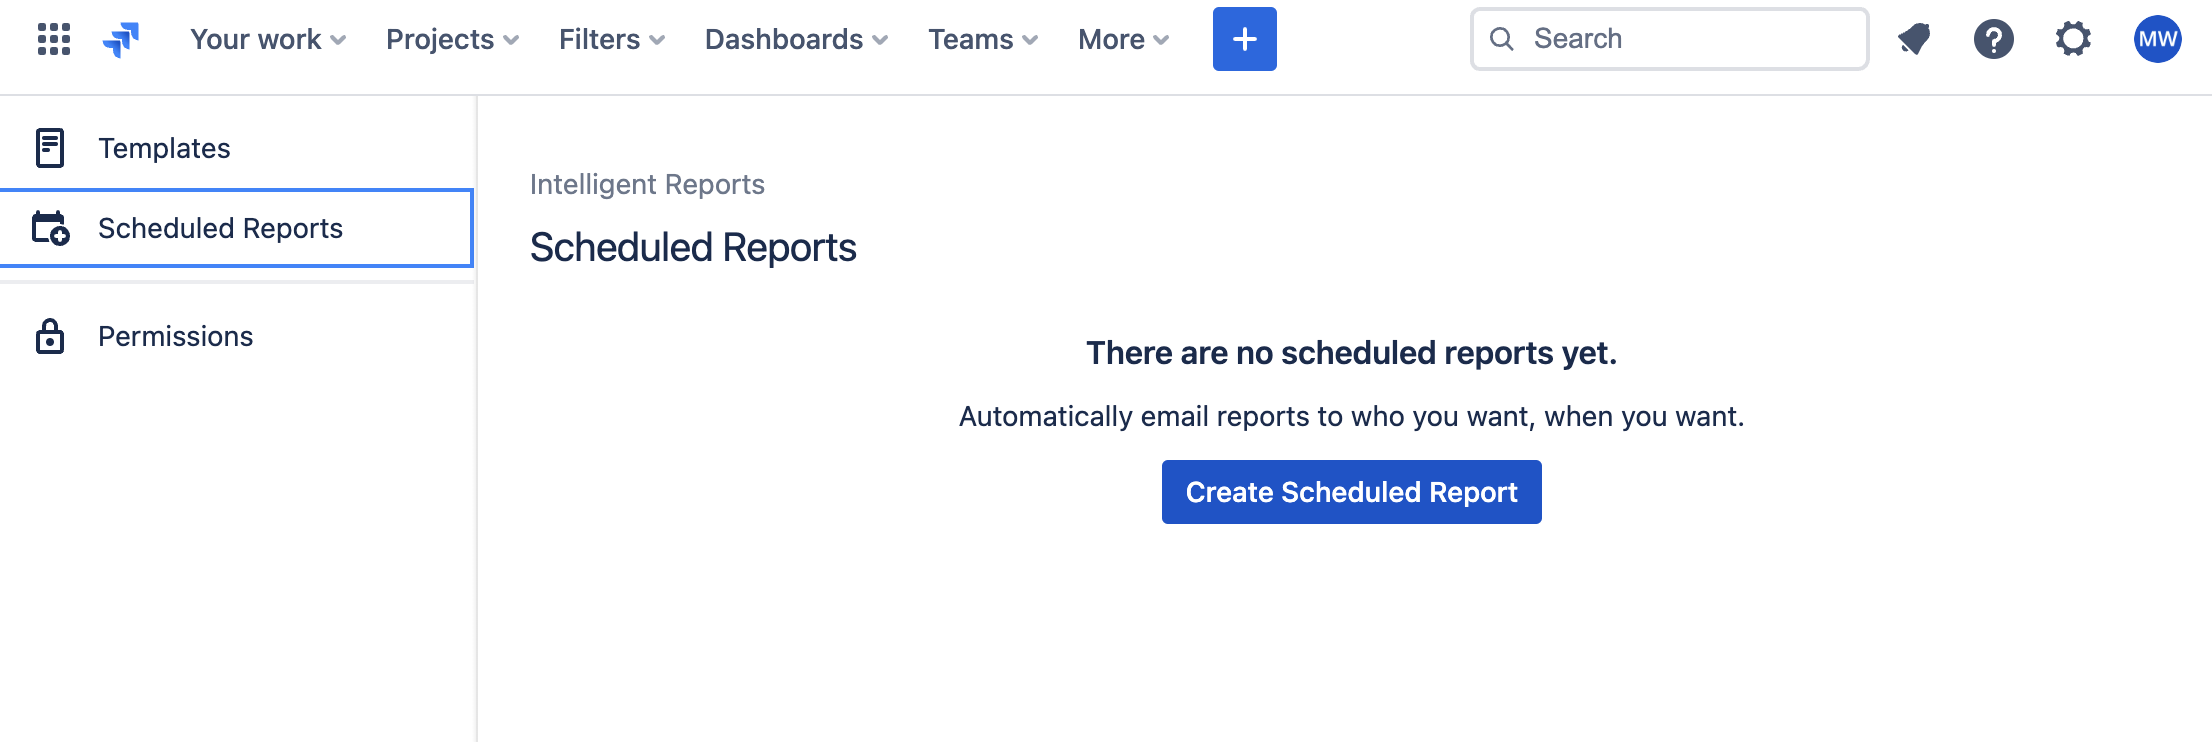 Add a scheduled report